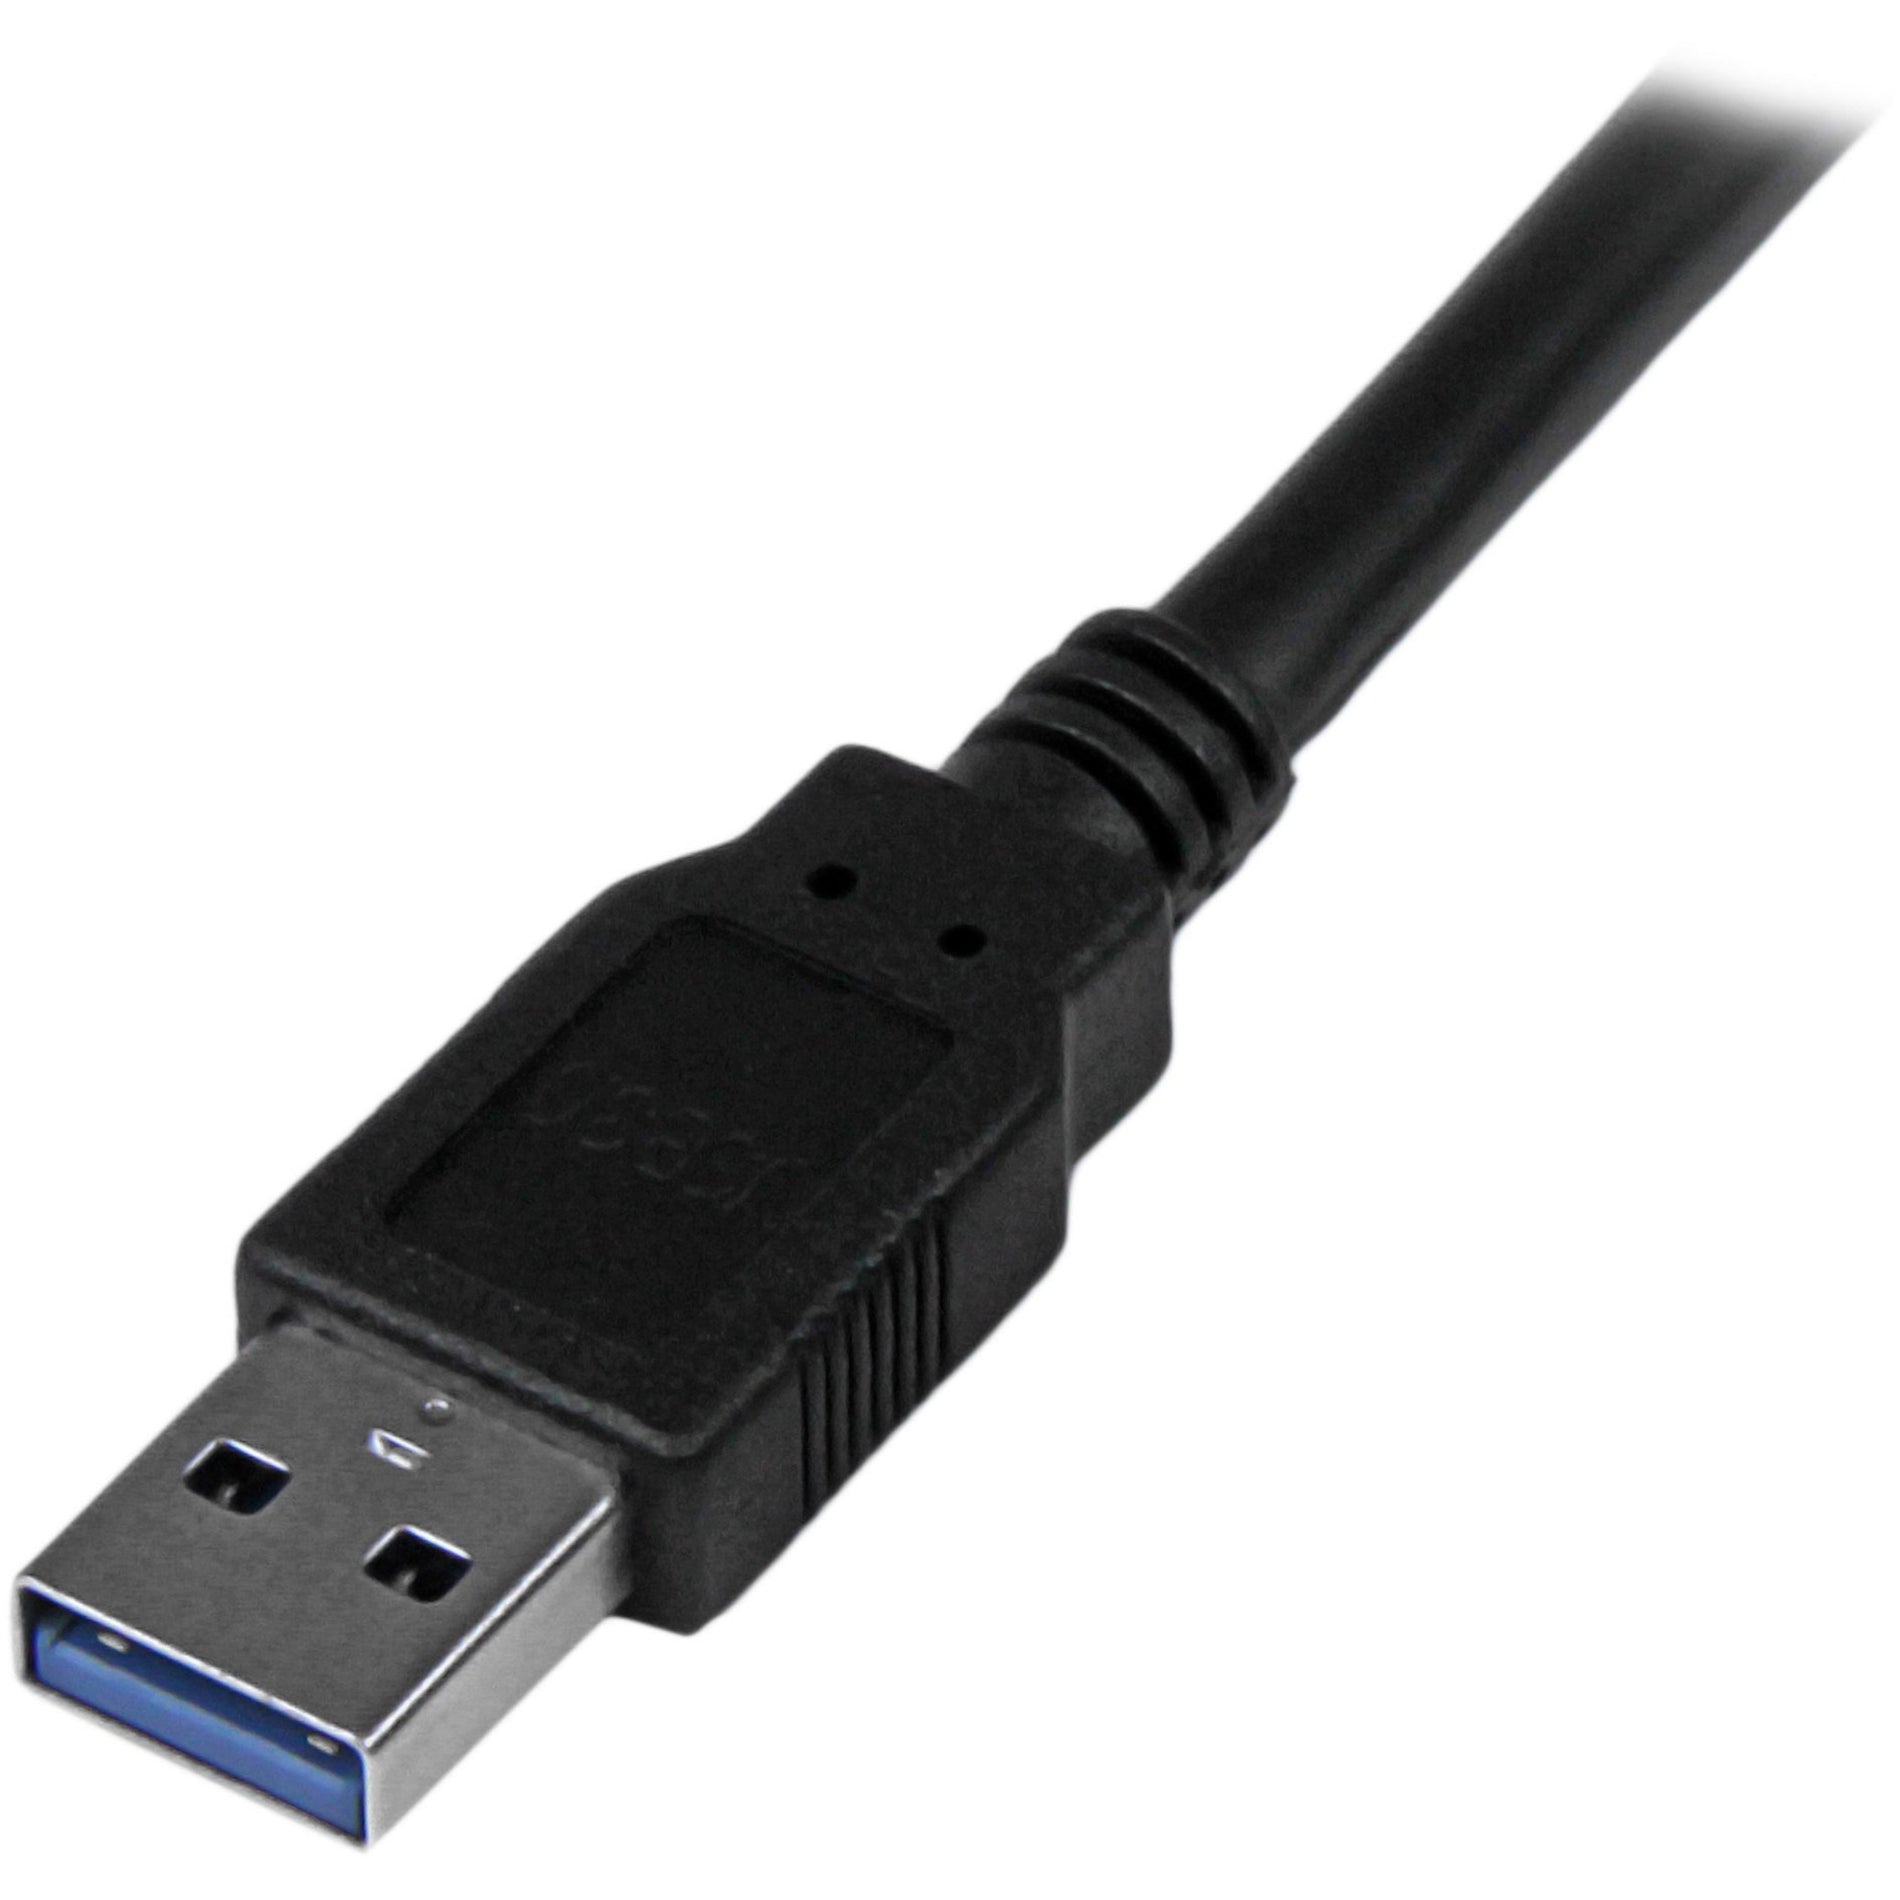 Câble de transfert de données USB StarTech.com USB3SAA3MBK 10 pi - Câble USB 3.0 long taux de transfert de données de 5 Gbps